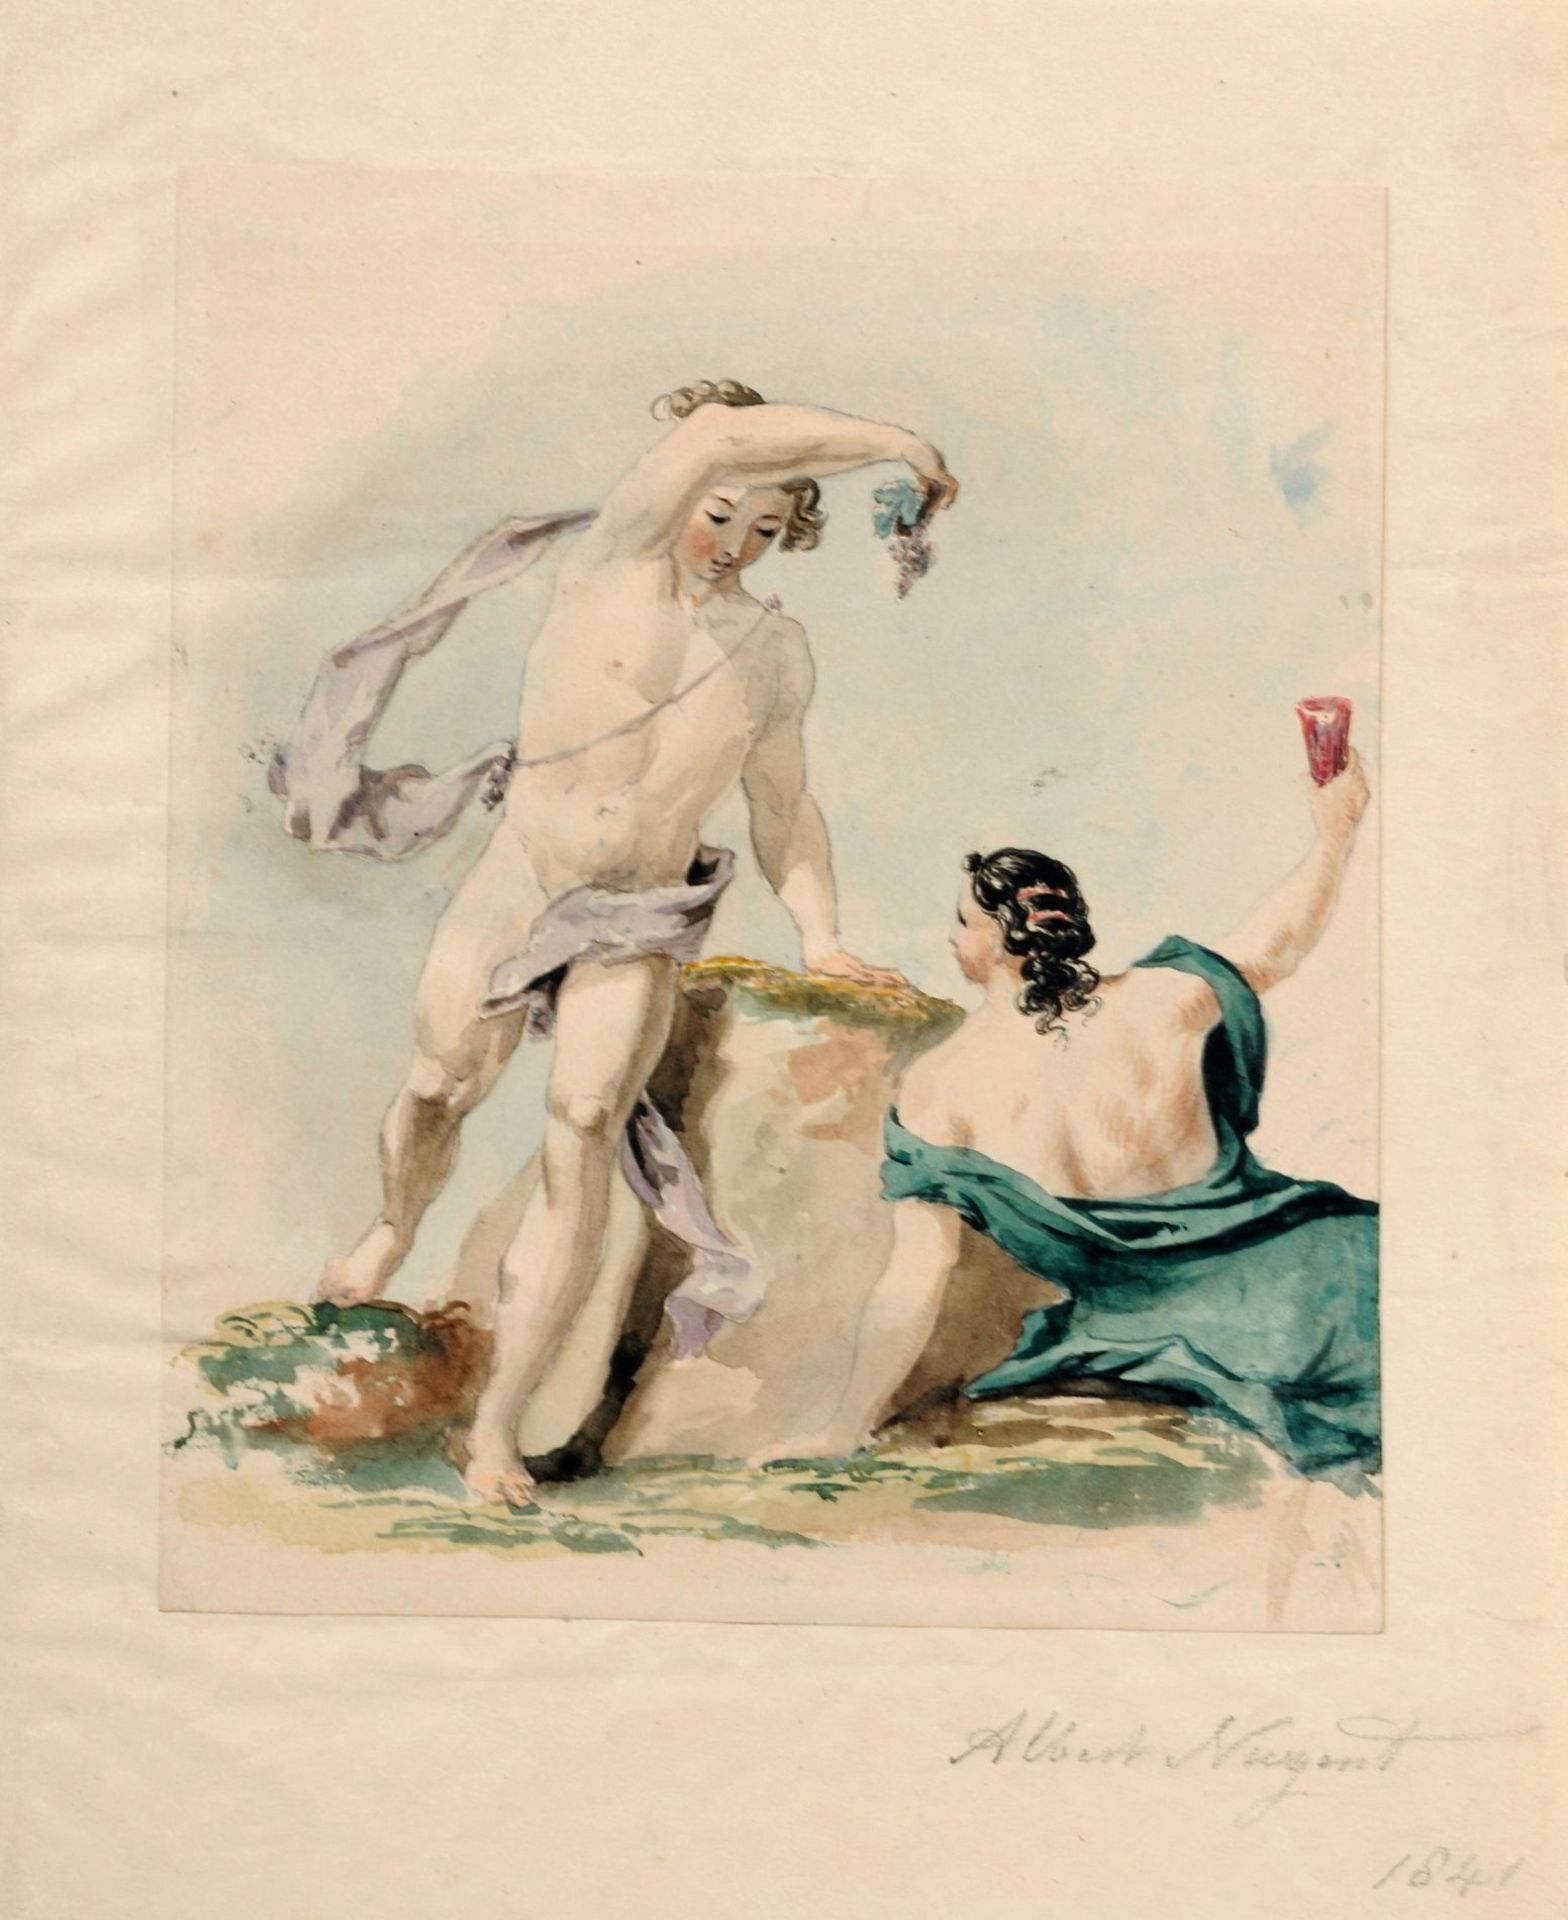 Albert Nugent, Bacchus mit einer Nymphe. 1841.